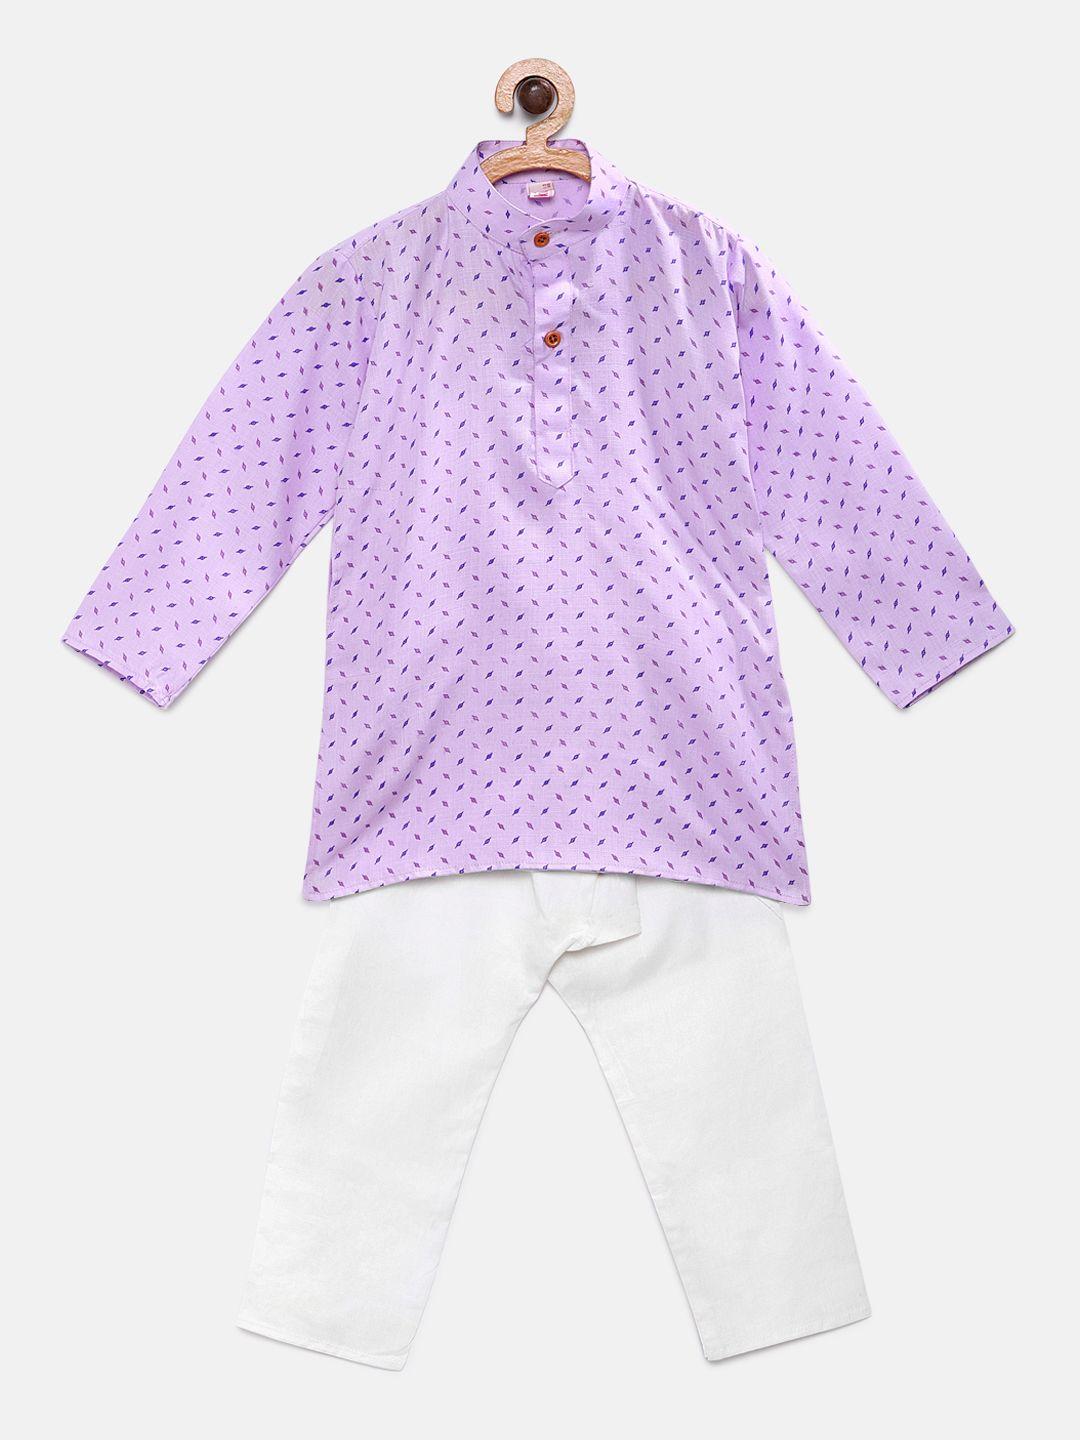 ridokidz boys purple & white printed kurta with pyjamas